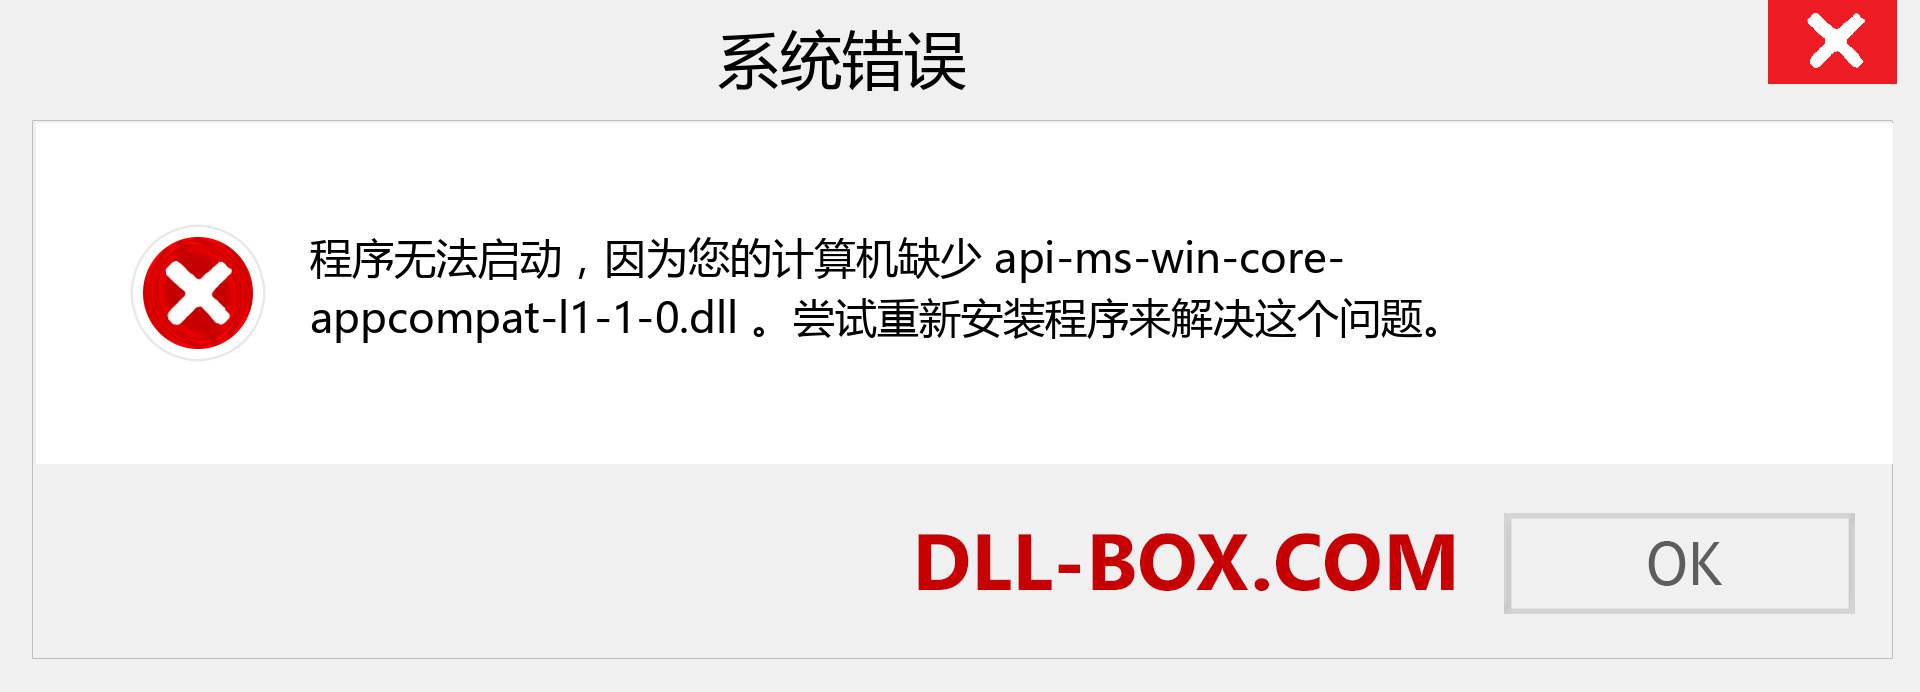 api-ms-win-core-appcompat-l1-1-0.dll 文件丢失？。 适用于 Windows 7、8、10 的下载 - 修复 Windows、照片、图像上的 api-ms-win-core-appcompat-l1-1-0 dll 丢失错误